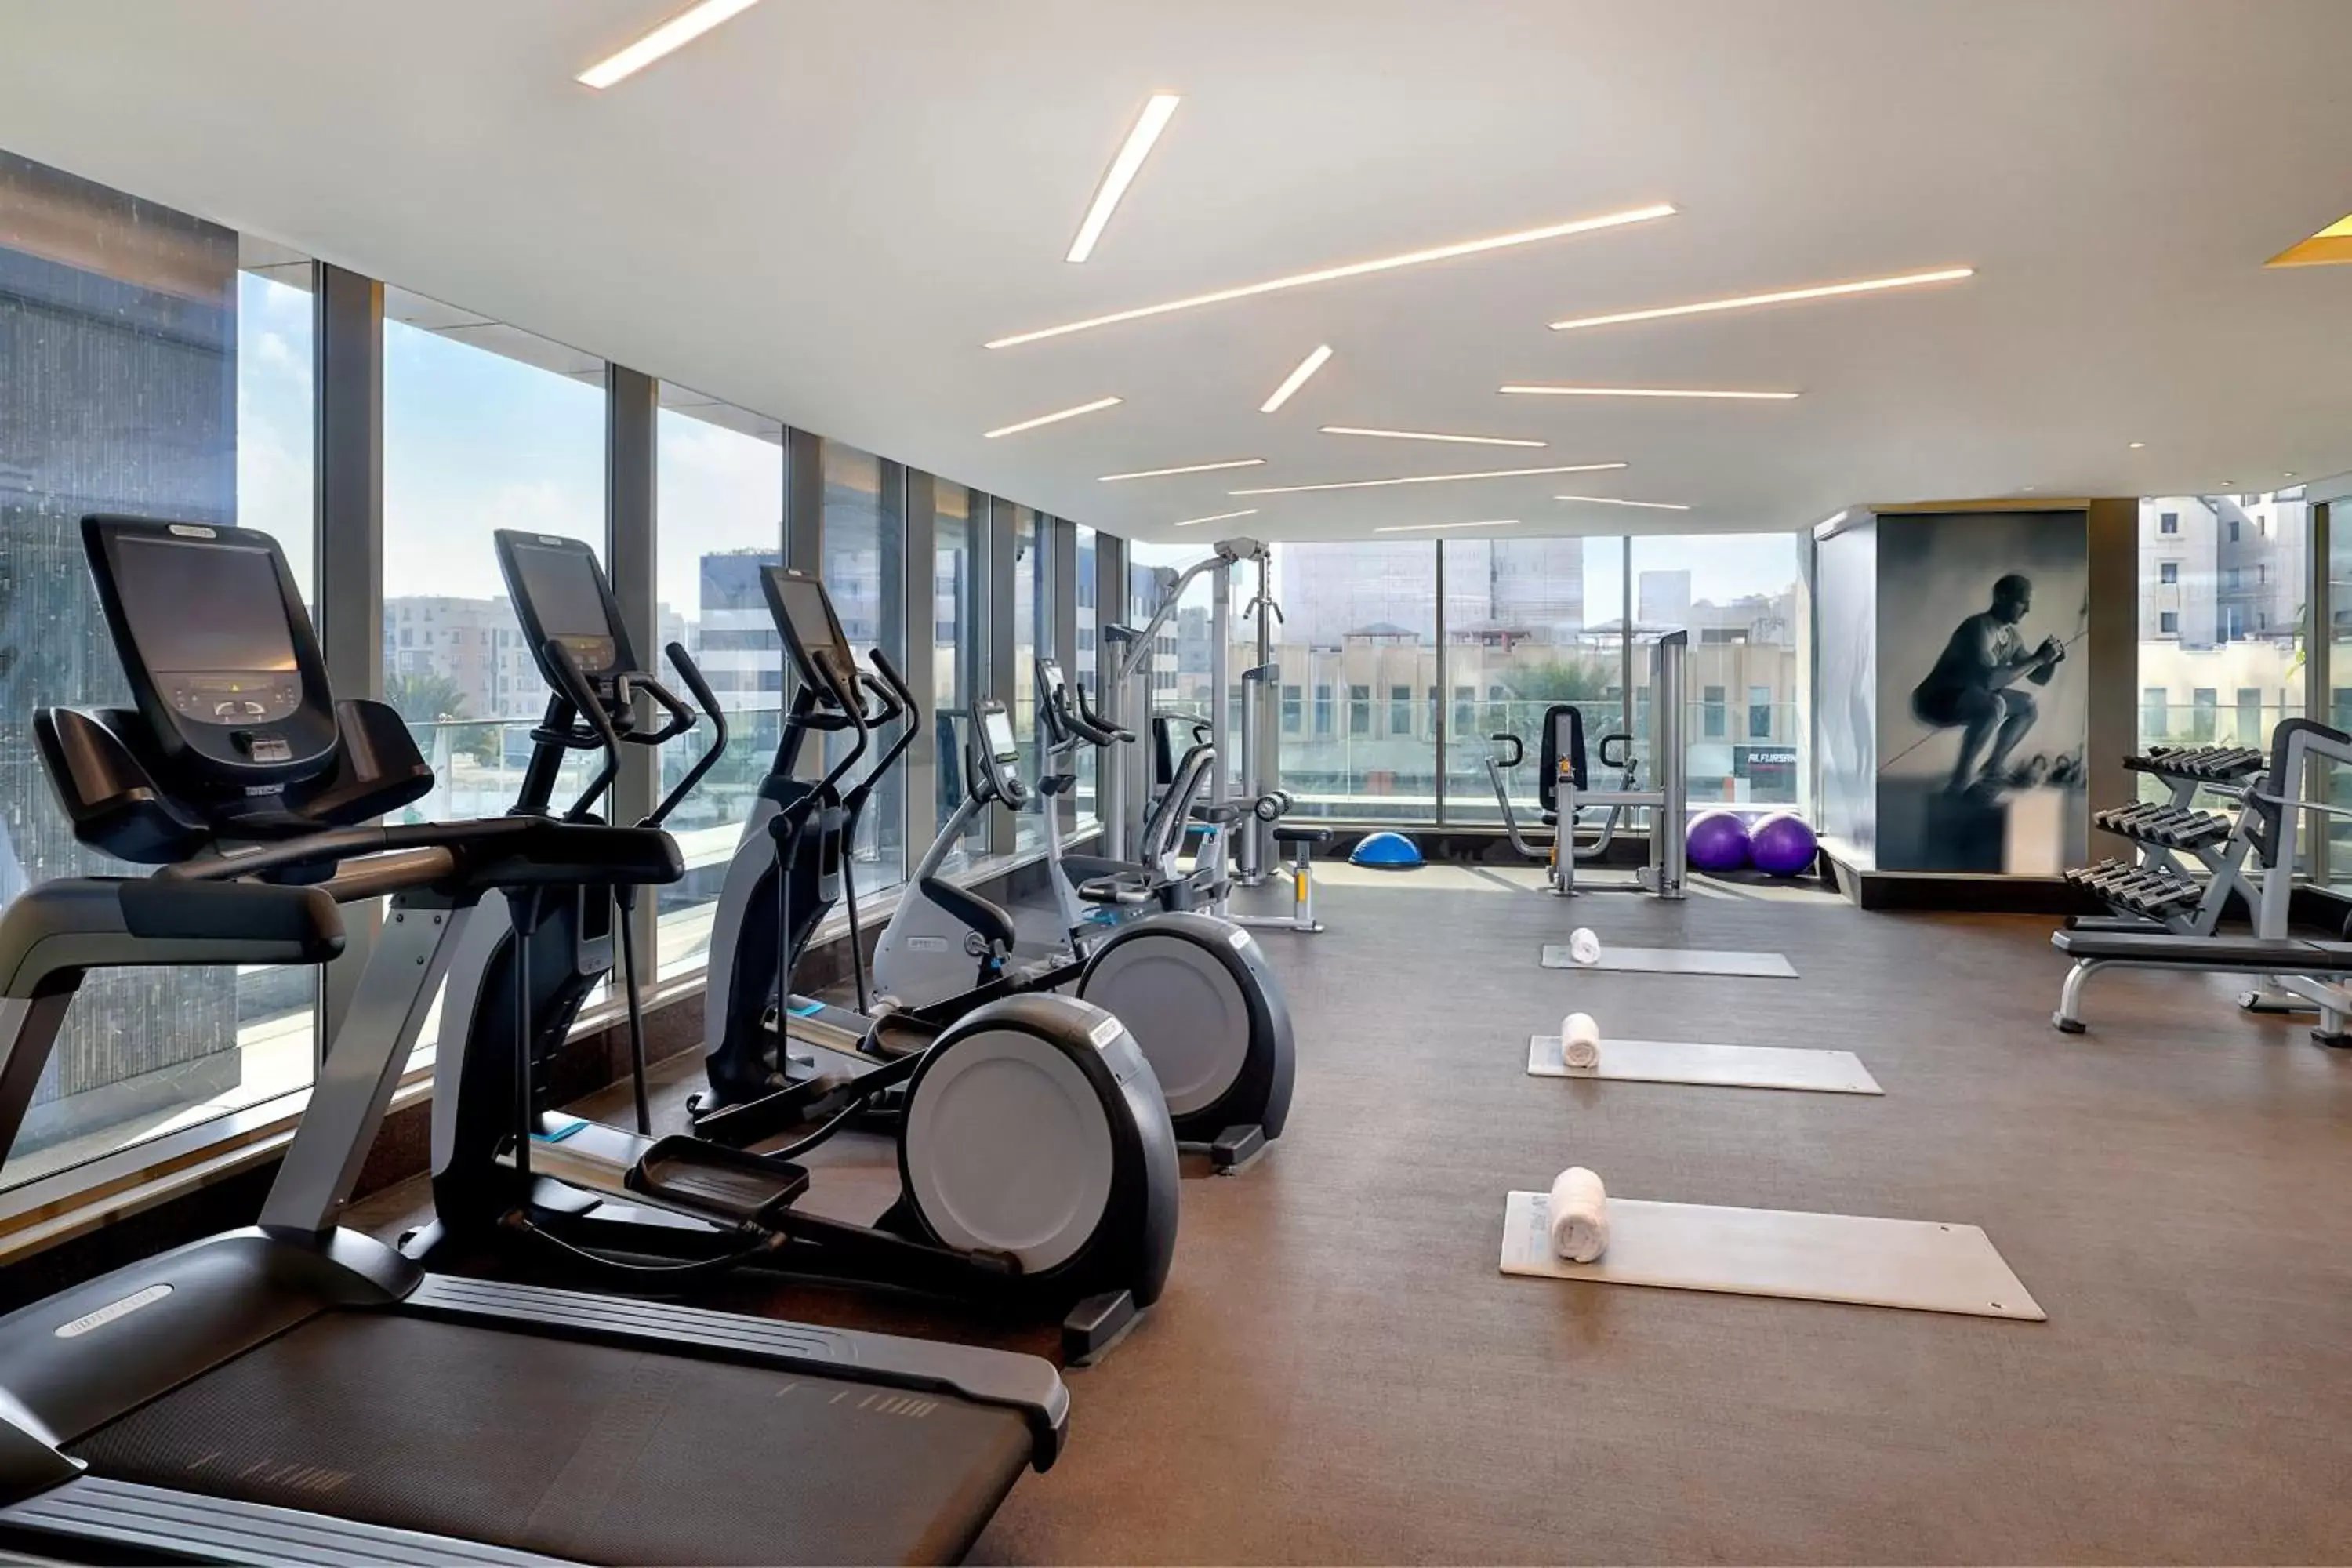 Fitness centre/facilities, Fitness Center/Facilities in Jeddah Marriott Hotel Madinah Road